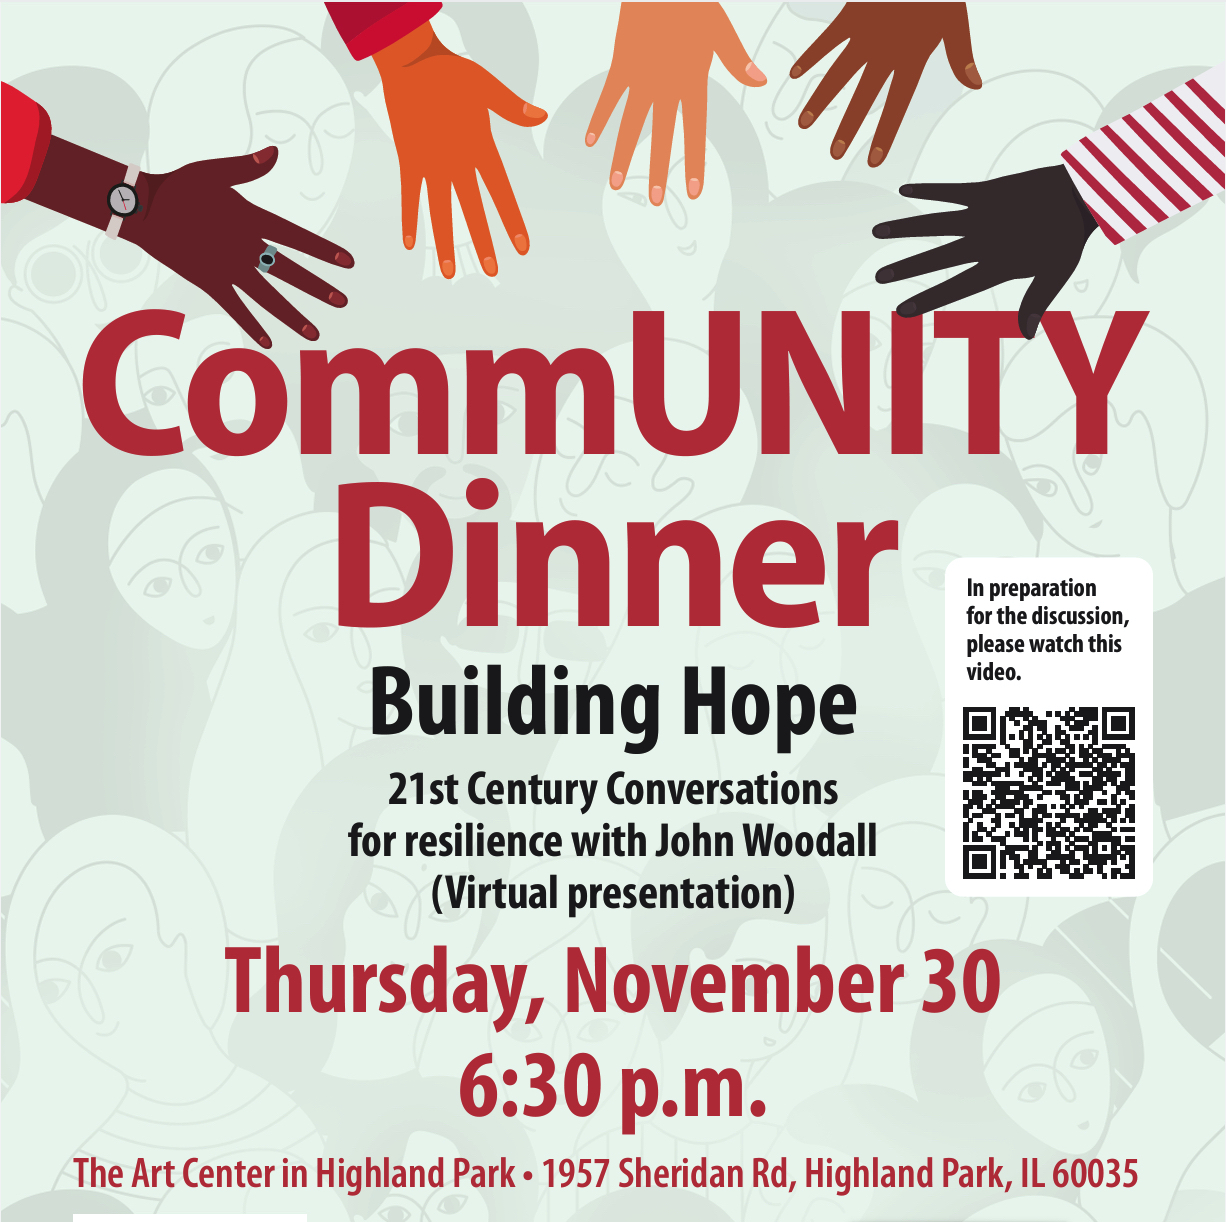 COMMUNITY DINNER - Building Hope!